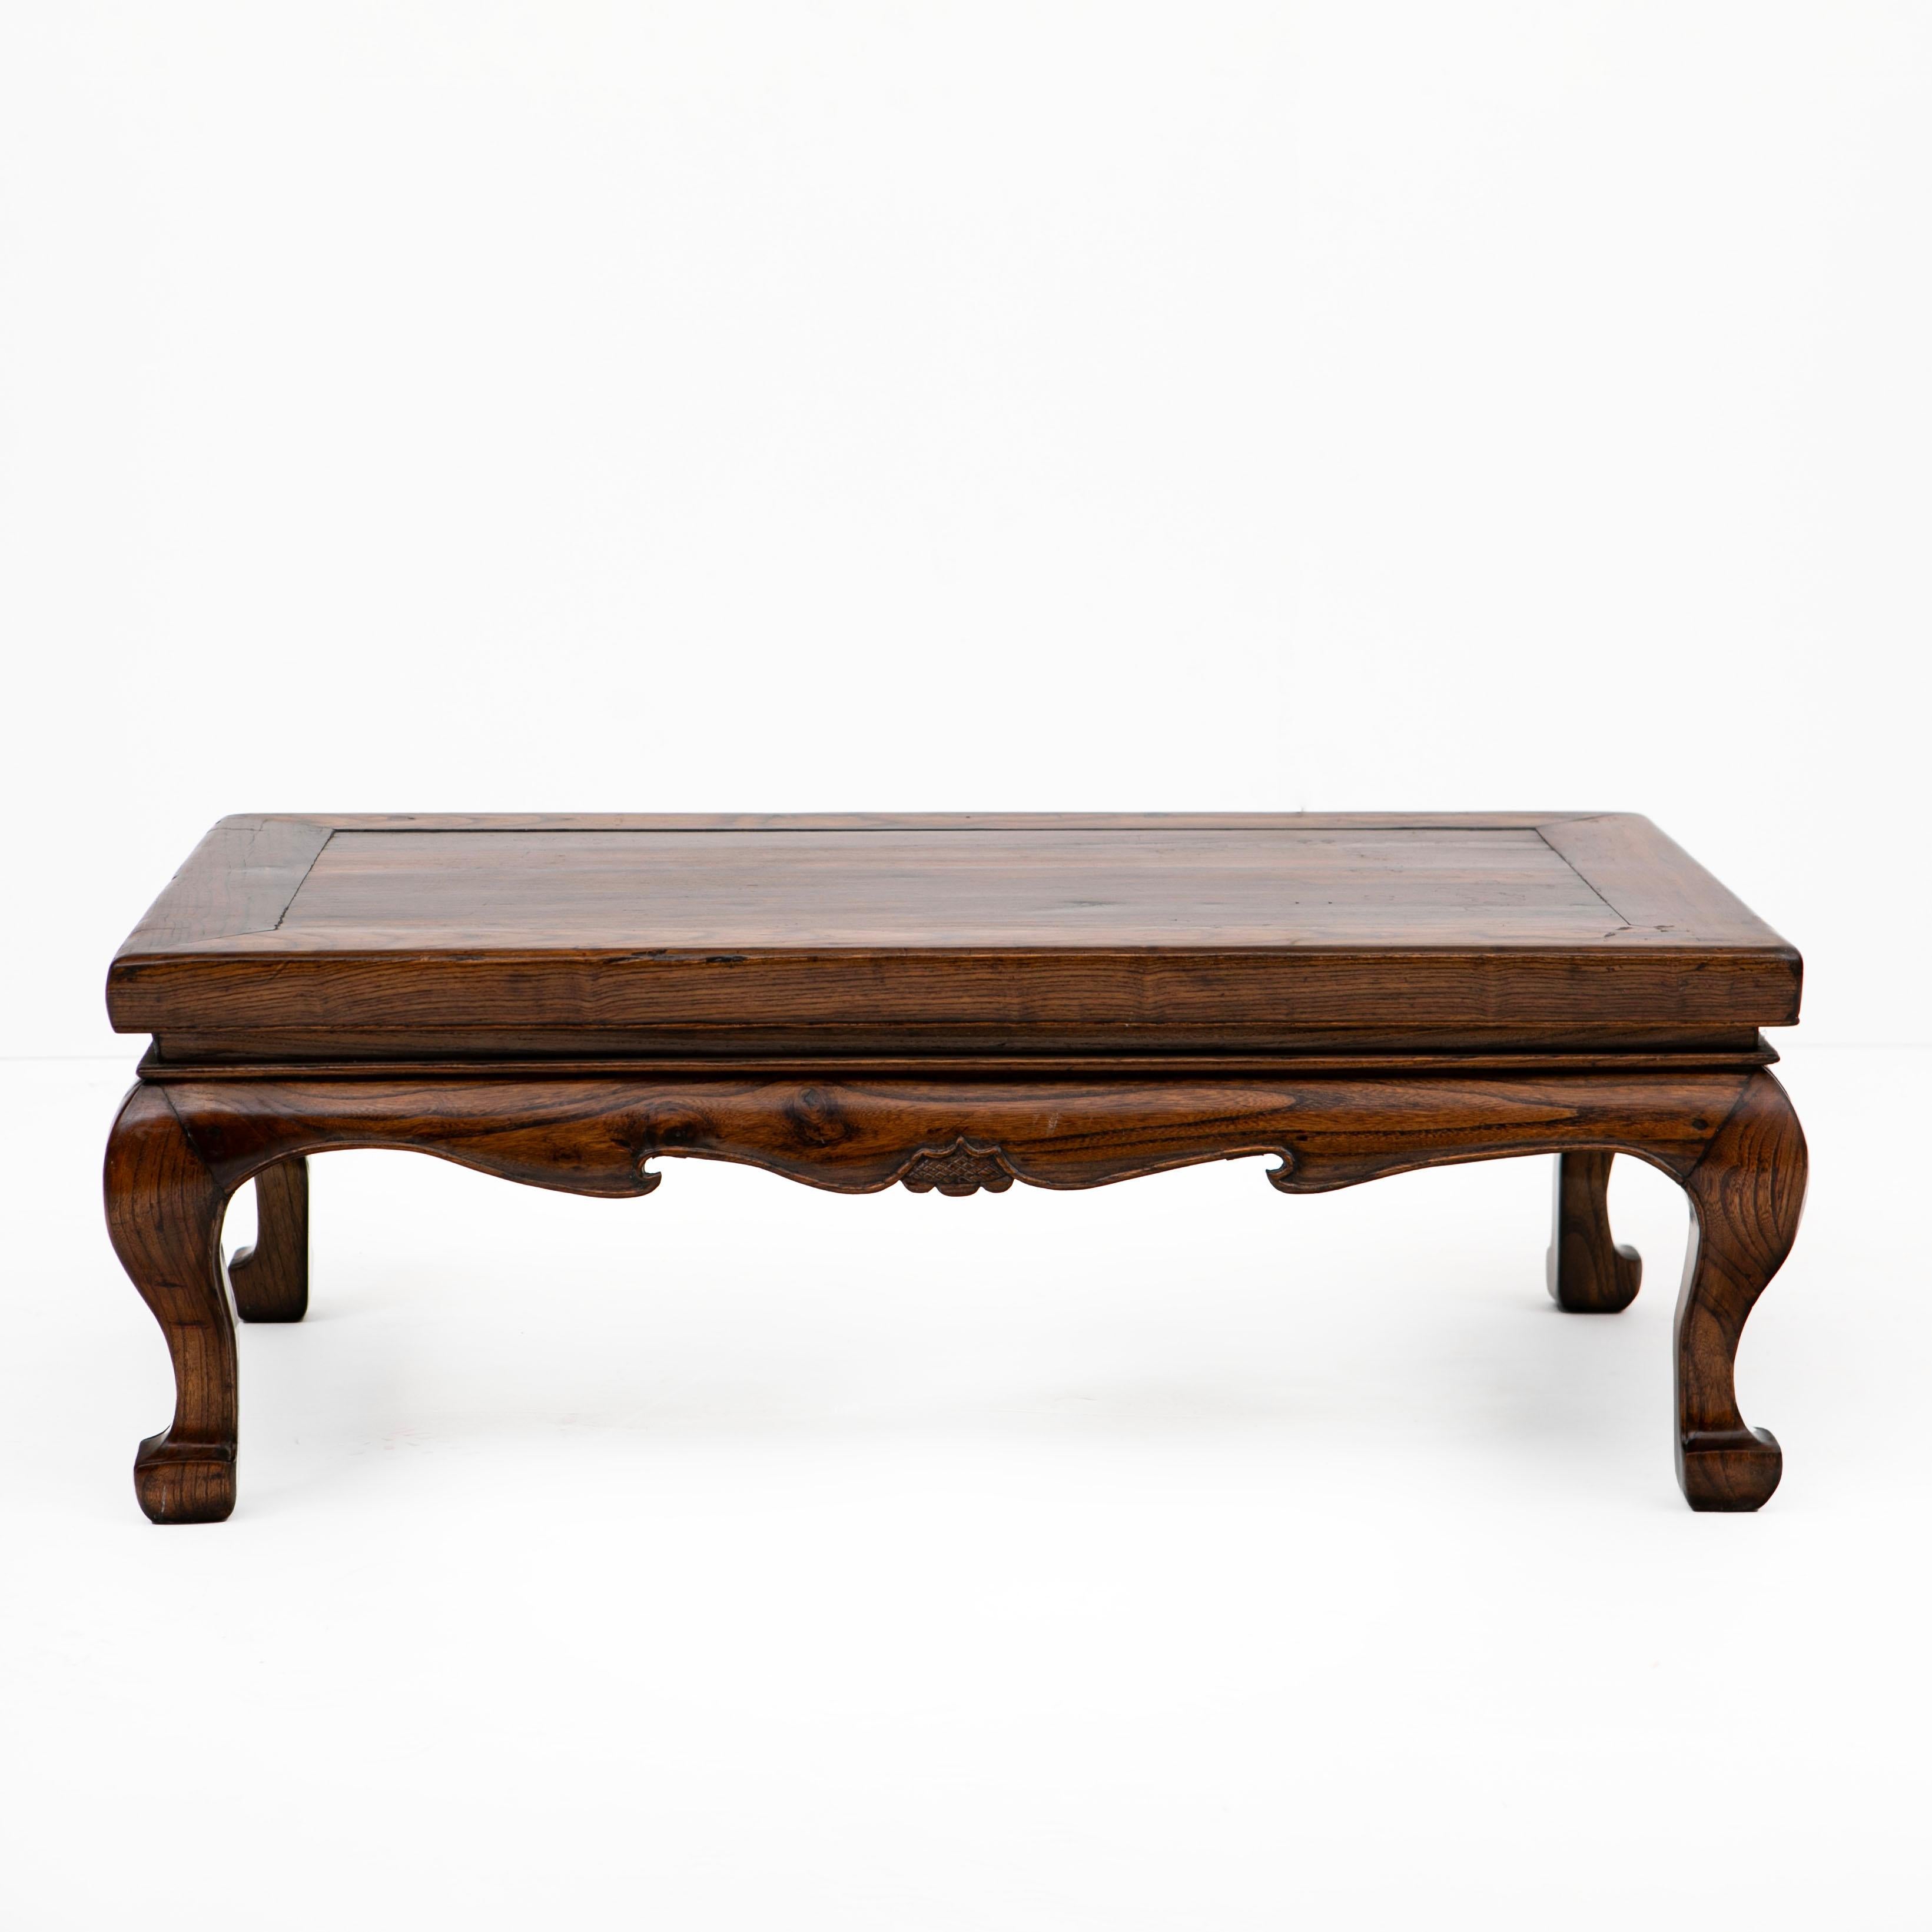 Table kang chinoise du milieu du 19e siècle.
Cette table basse est fabriquée en bois d'orme laqué. Il est doté d'un plateau rectangulaire et d'un panneau flottant solide.
En état d'origine, avec une belle patine naturelle liée à l'âge, rehaussée